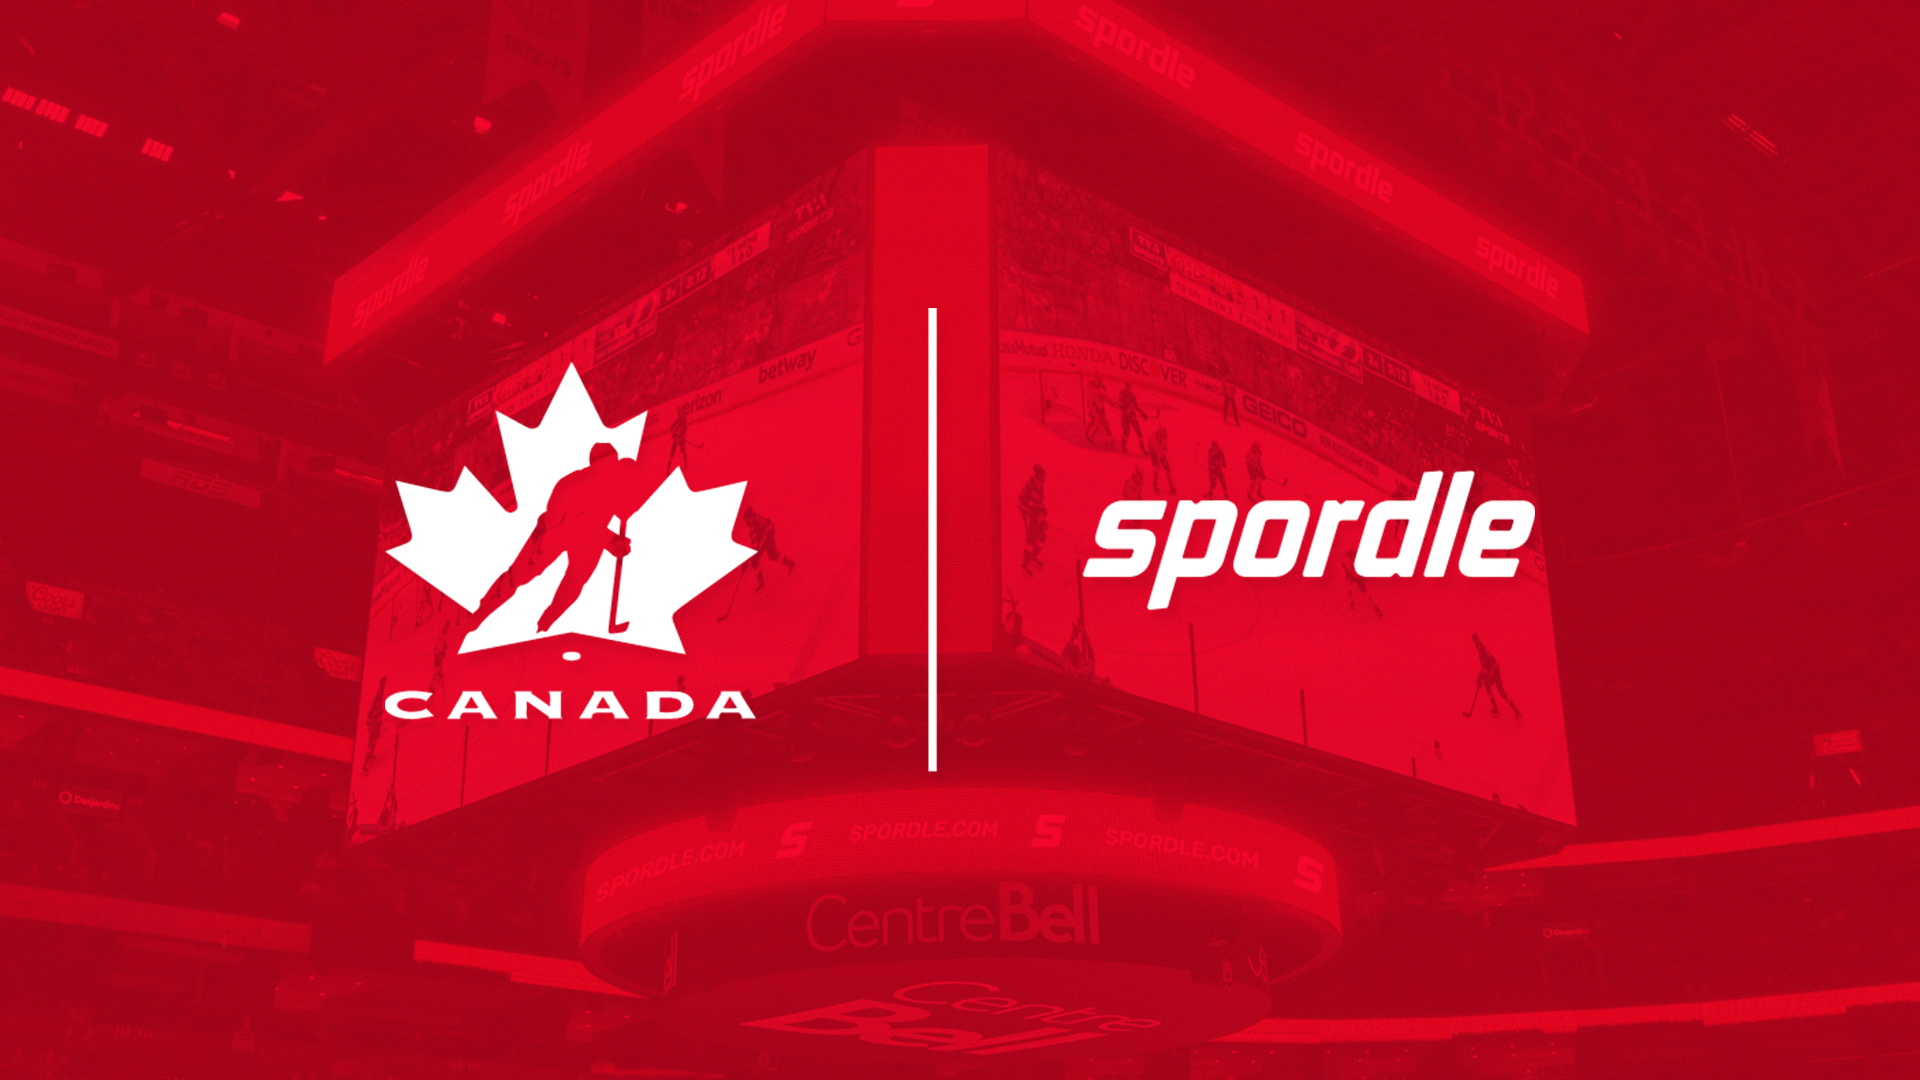 pr-april-5-2022-hockey-canada-spordle-red